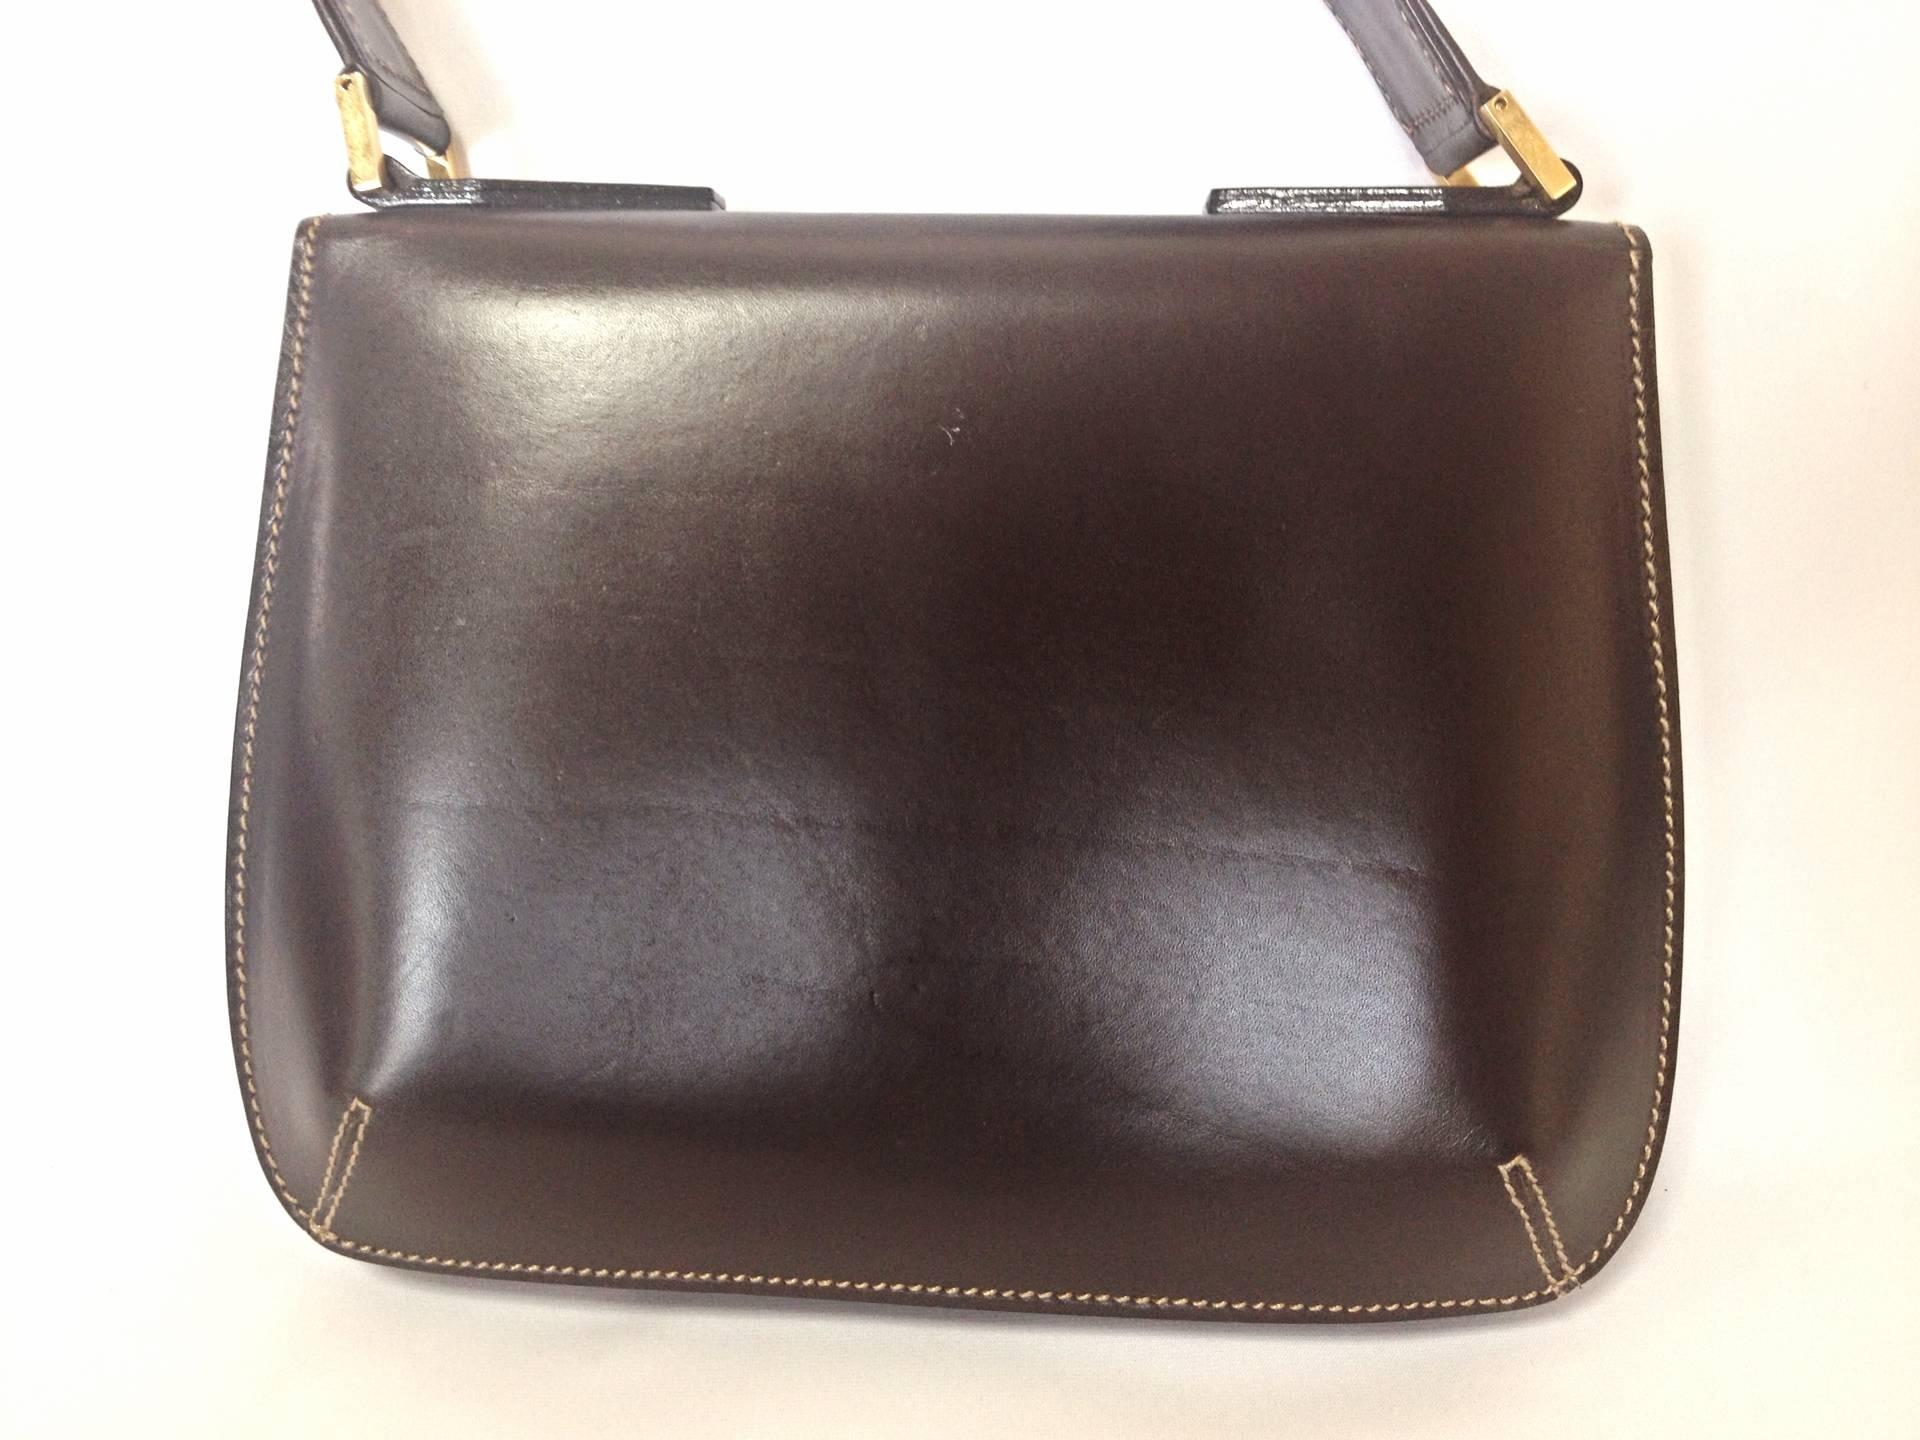 Black Vintage FENDI genuine dark brown leather handbag with golden FF logo at closure. For Sale